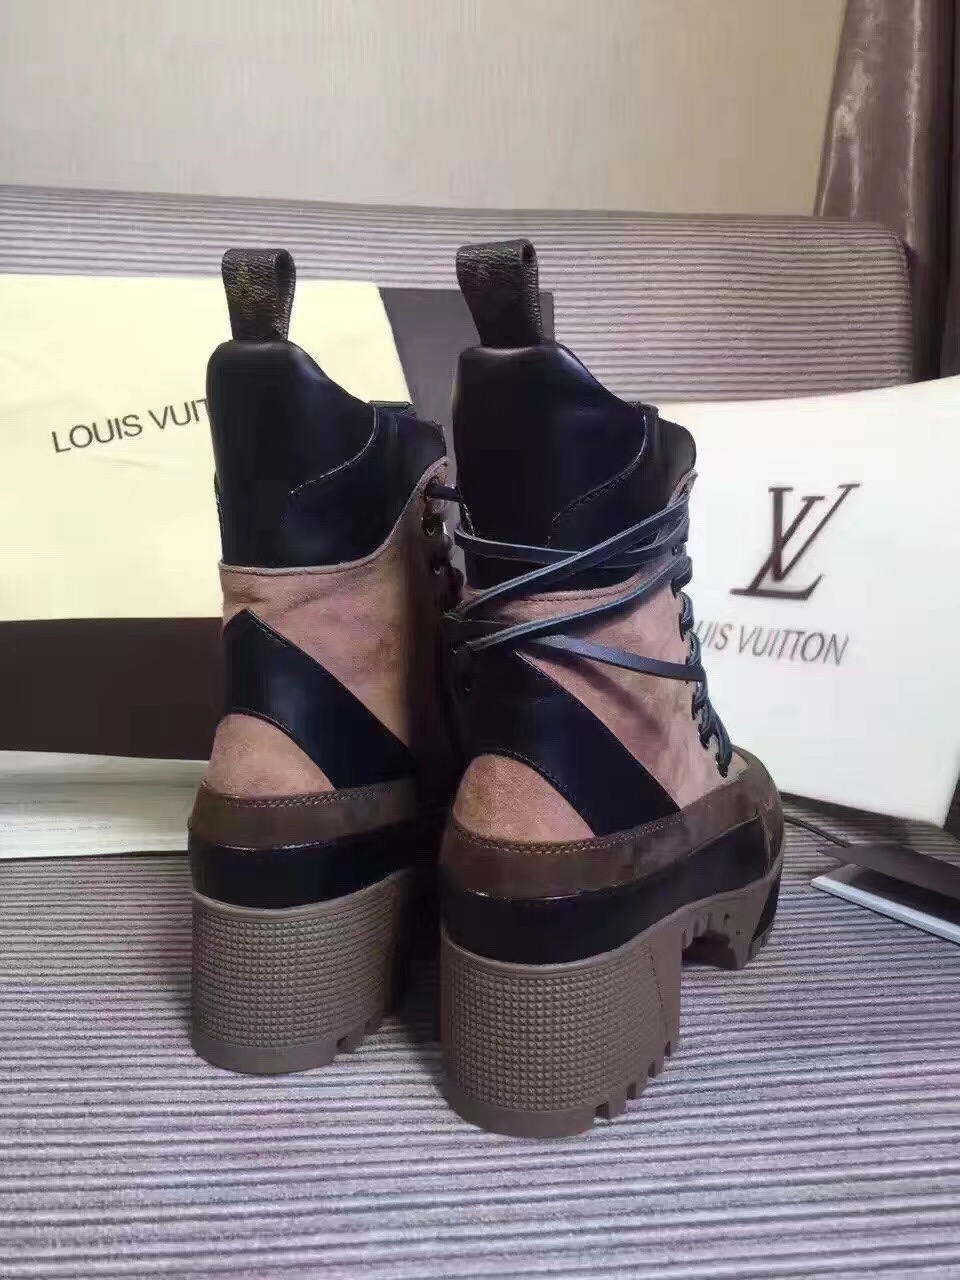 Louis Vuitton Palm Canyon Desert Boots in Khaki 1A157D 2016 (GD4032-6092031 )